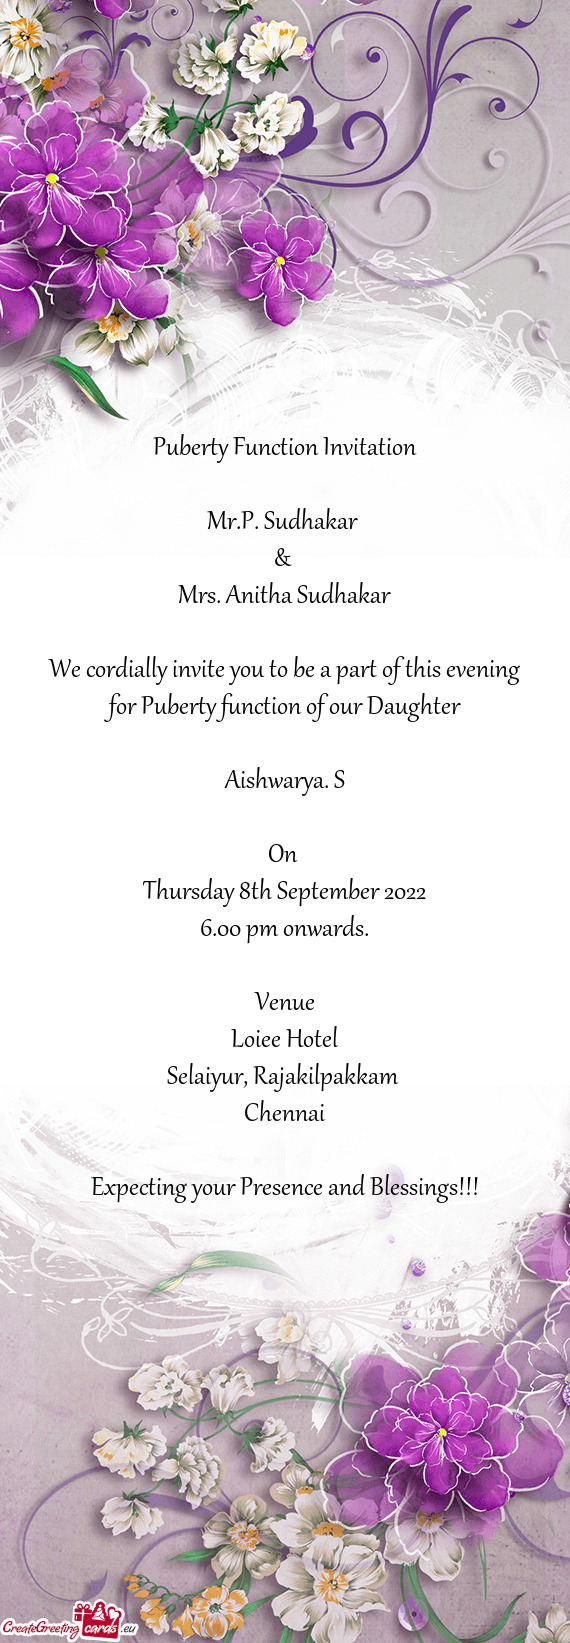 Mrs. Anitha Sudhakar